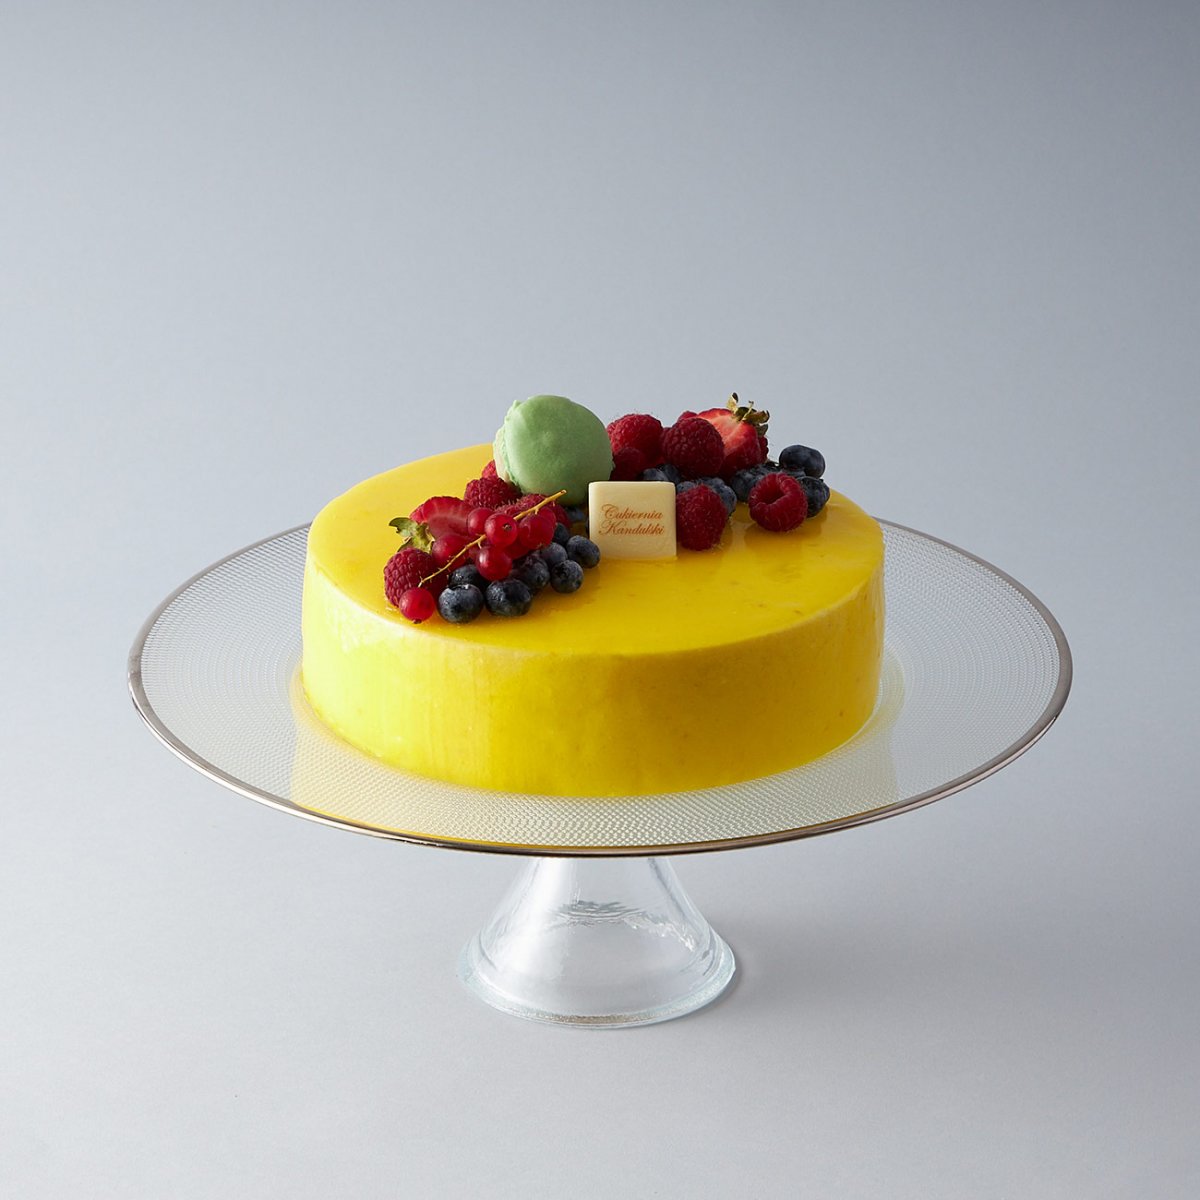 Муссовый торт «манго-маракуйя»: рецепт и способы приготовления в домашних условиях